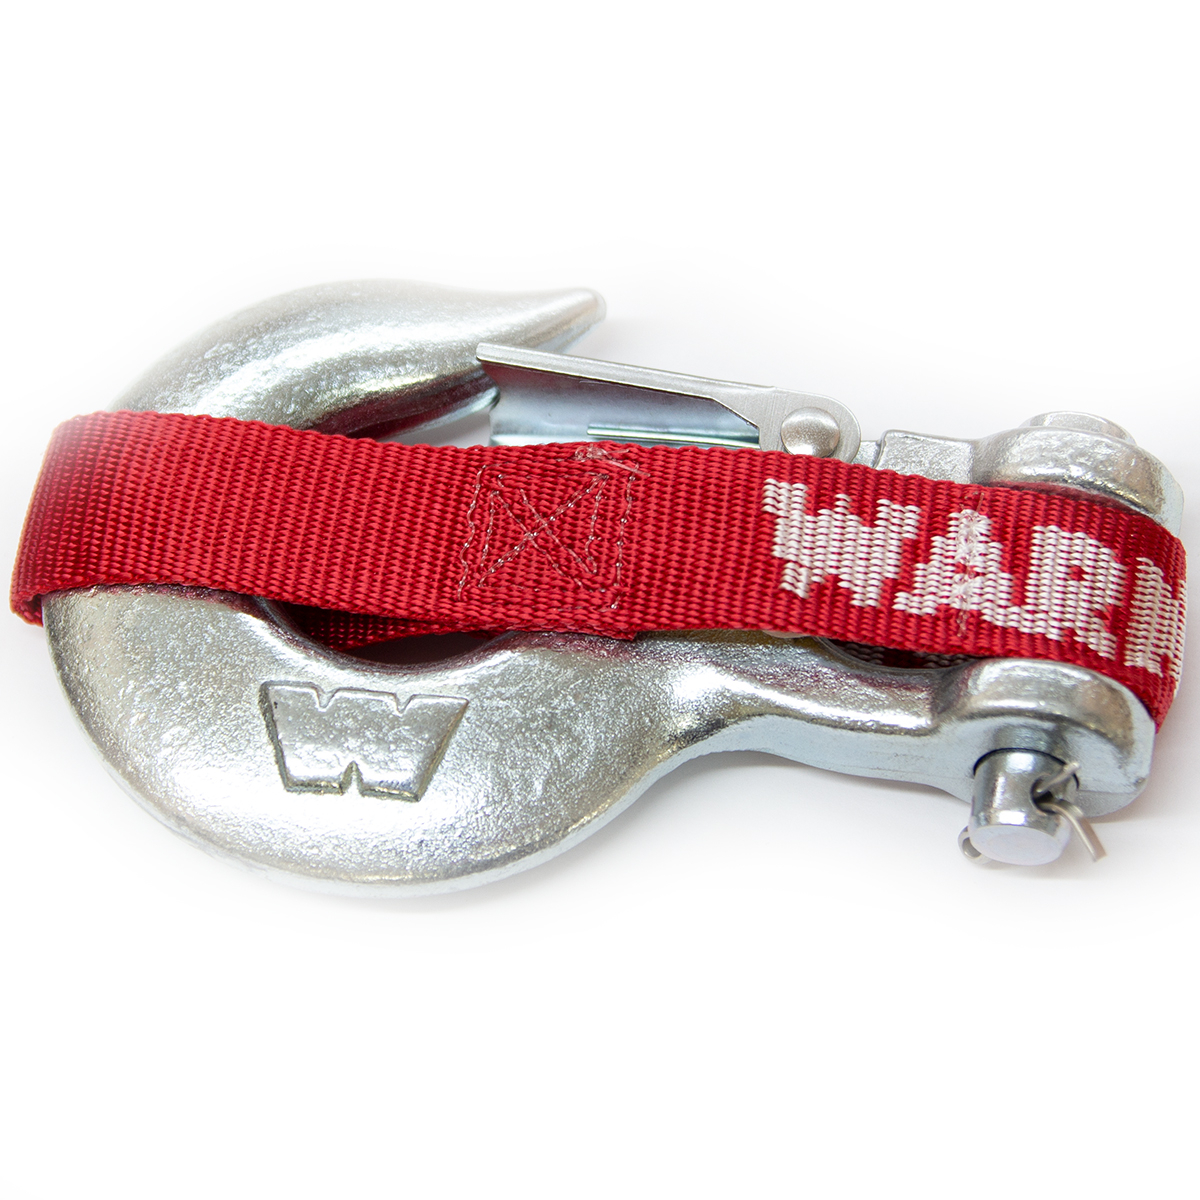 Warn 98426 Winch Hook + Safety Strap